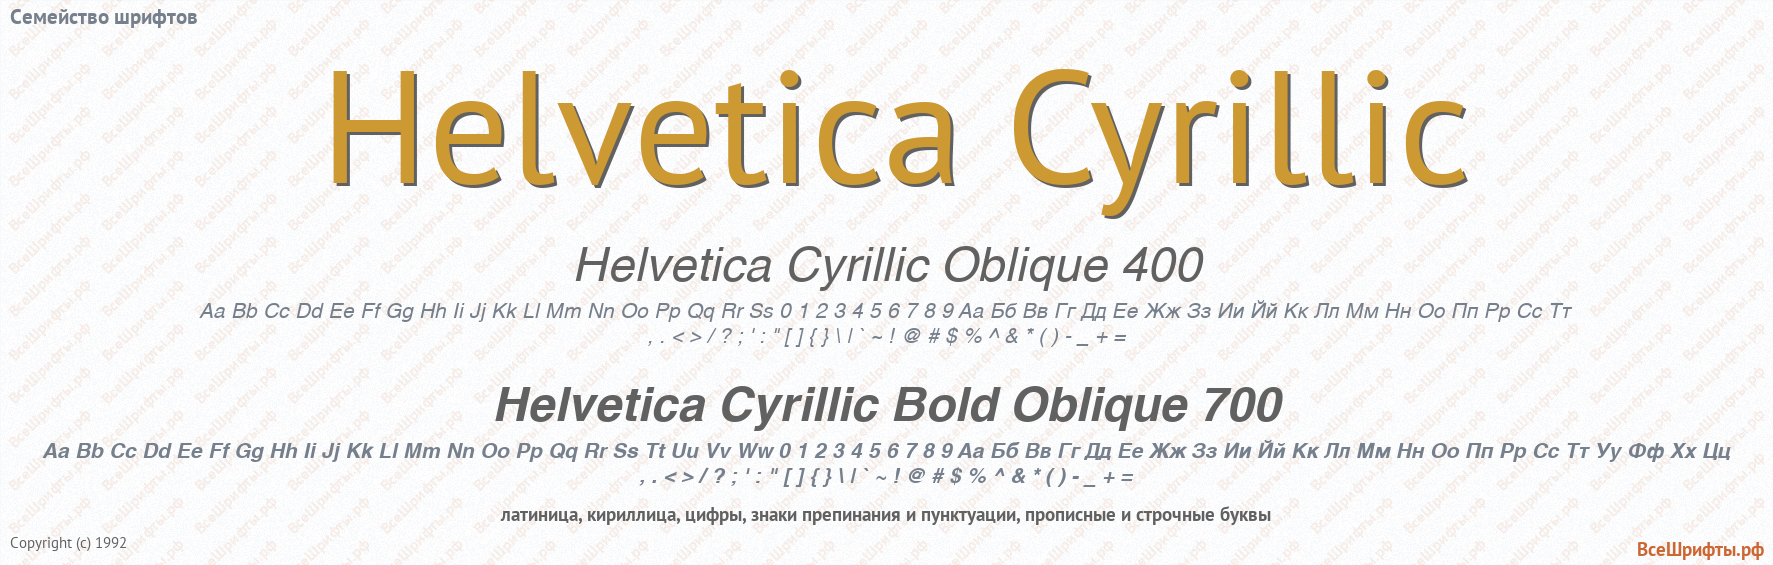 Шрифт helvetica cyr. Helvetica Cyrillic. Helvetica кириллица. Helvetica шрифт русский. Семейства шрифтов кириллица.